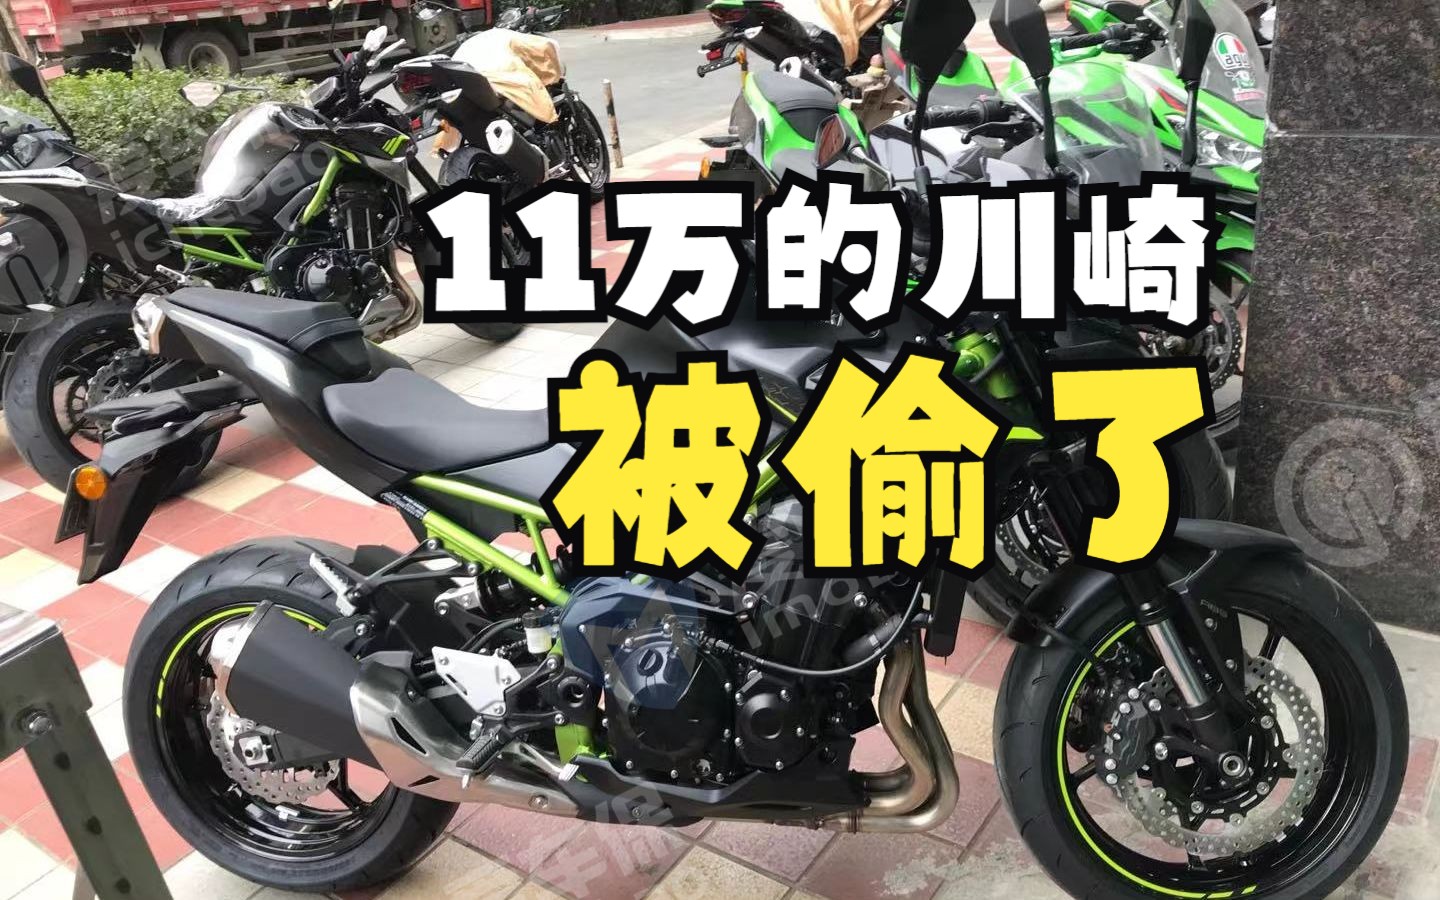 11万川崎摩托车被盗后续